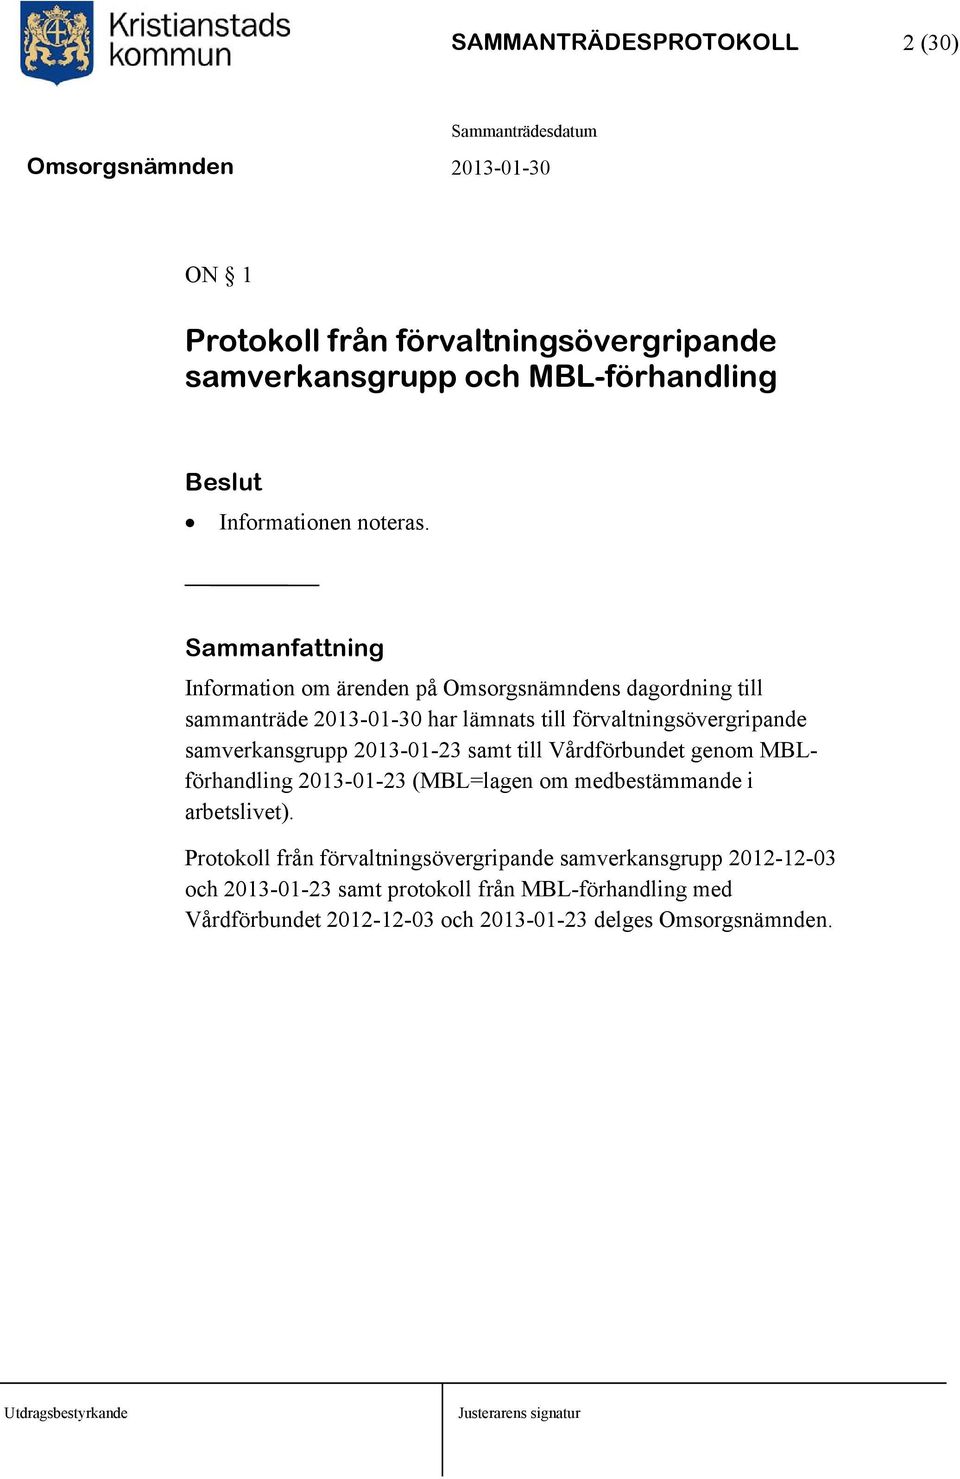 samverkansgrupp 2013-01-23 samt till Vårdförbundet genom MBLförhandling 2013-01-23 (MBL=lagen om medbestämmande i arbetslivet).